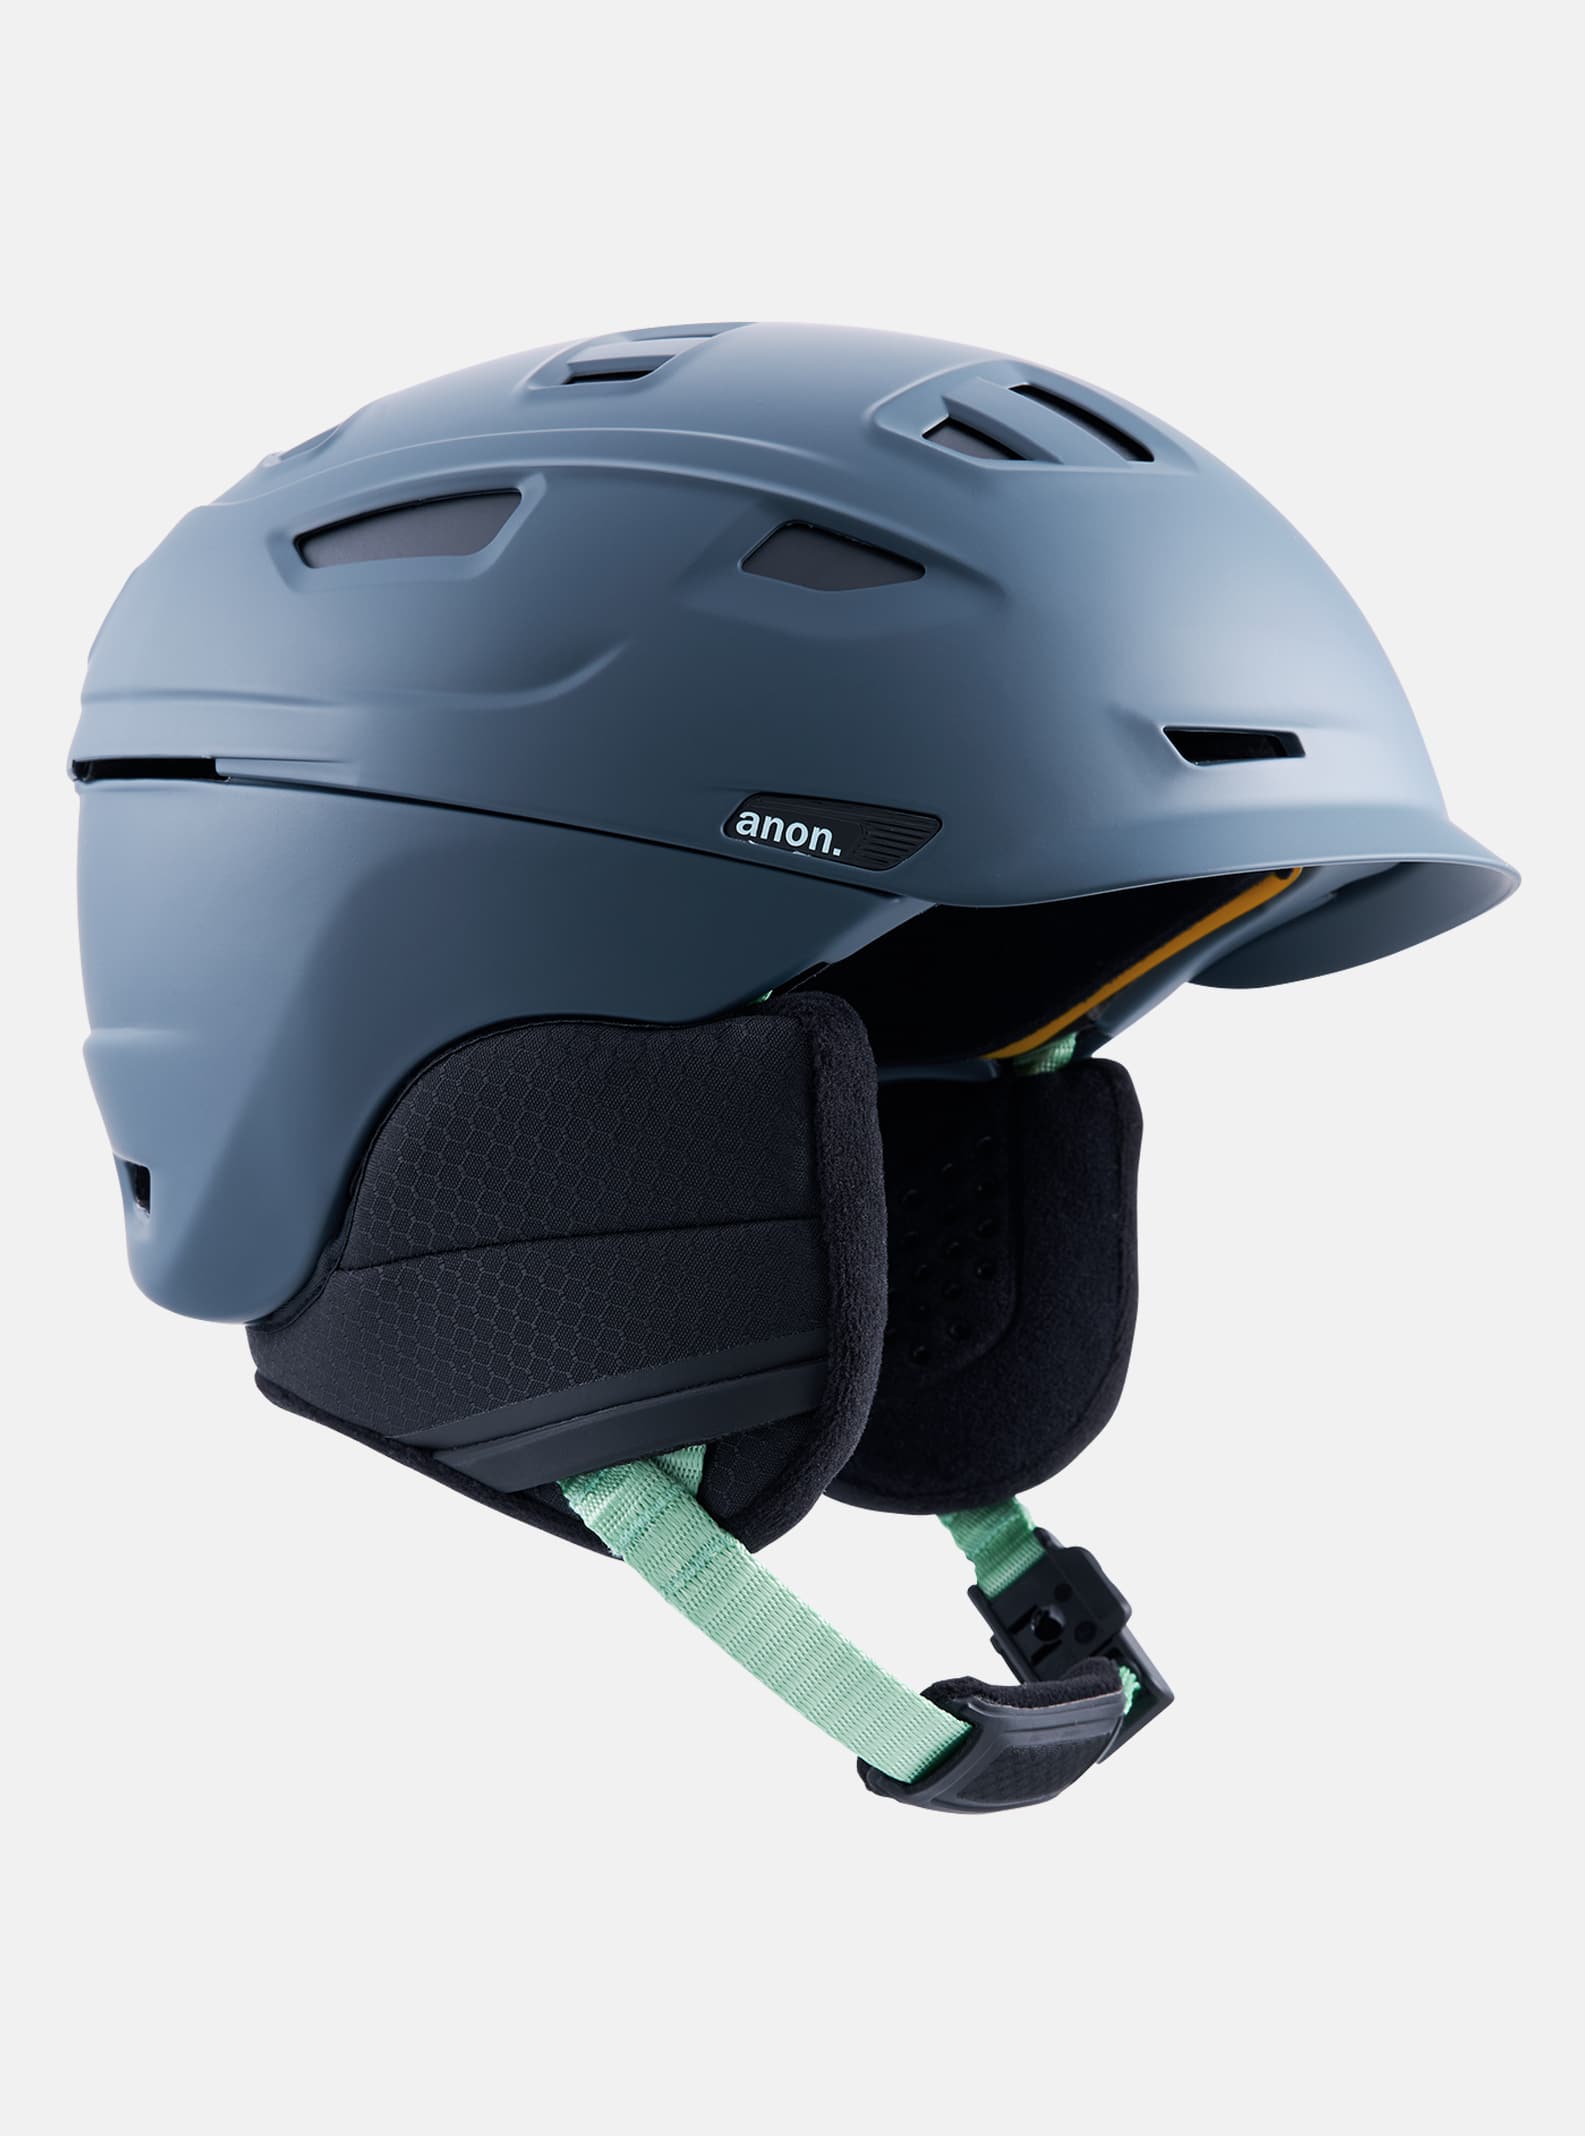 Anon Prime MIPS® Ski & Snowboard Helmet